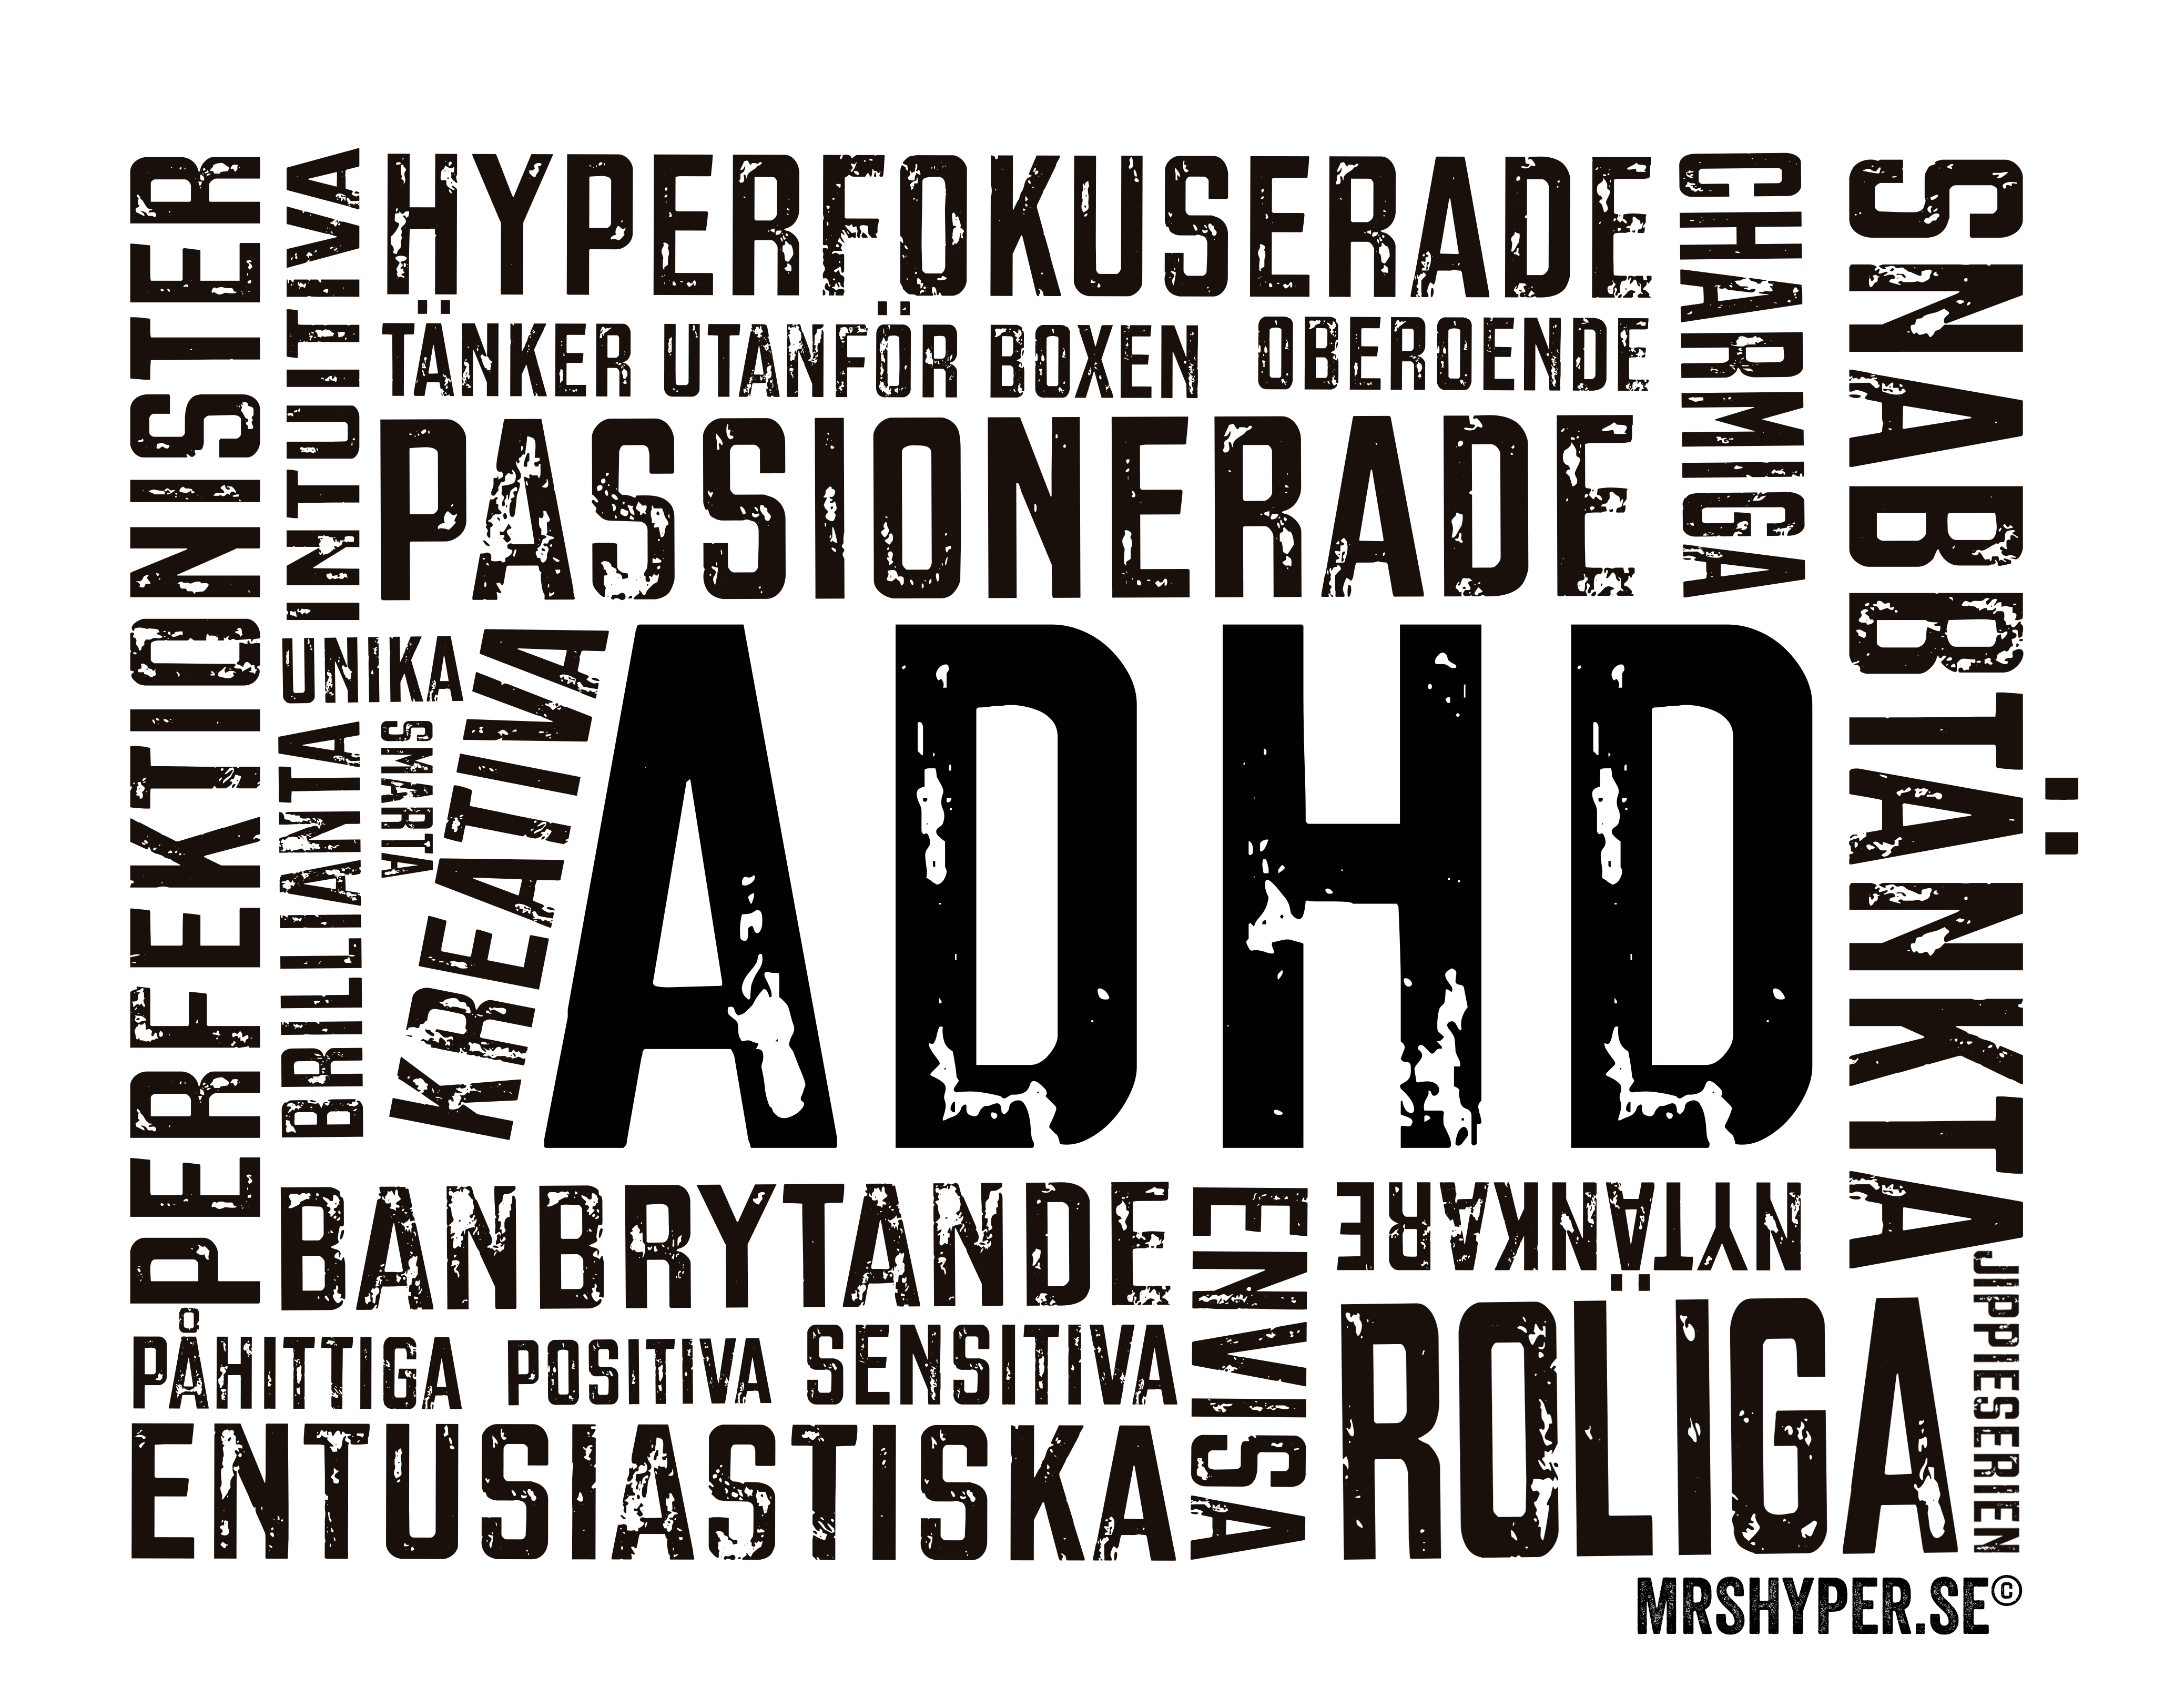 ADHD tavlan eller ”bara-måste-ha-tavlan”?